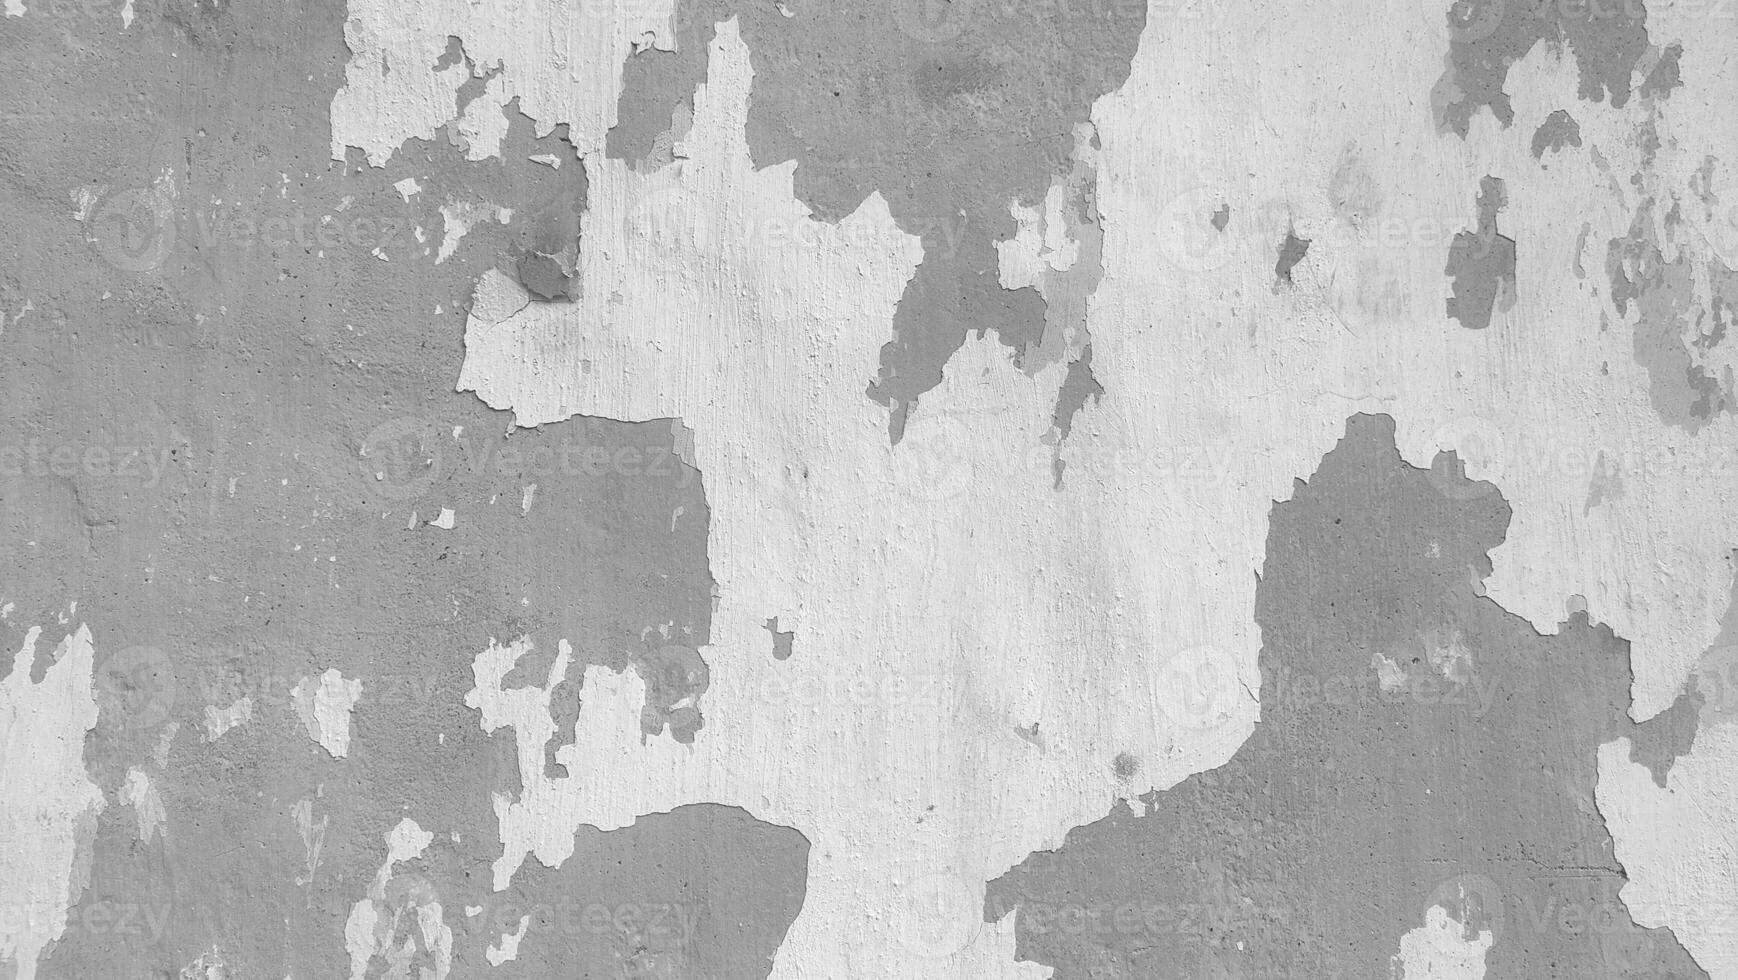 alt beschädigt Mauer Textur schwarz und Weiß foto